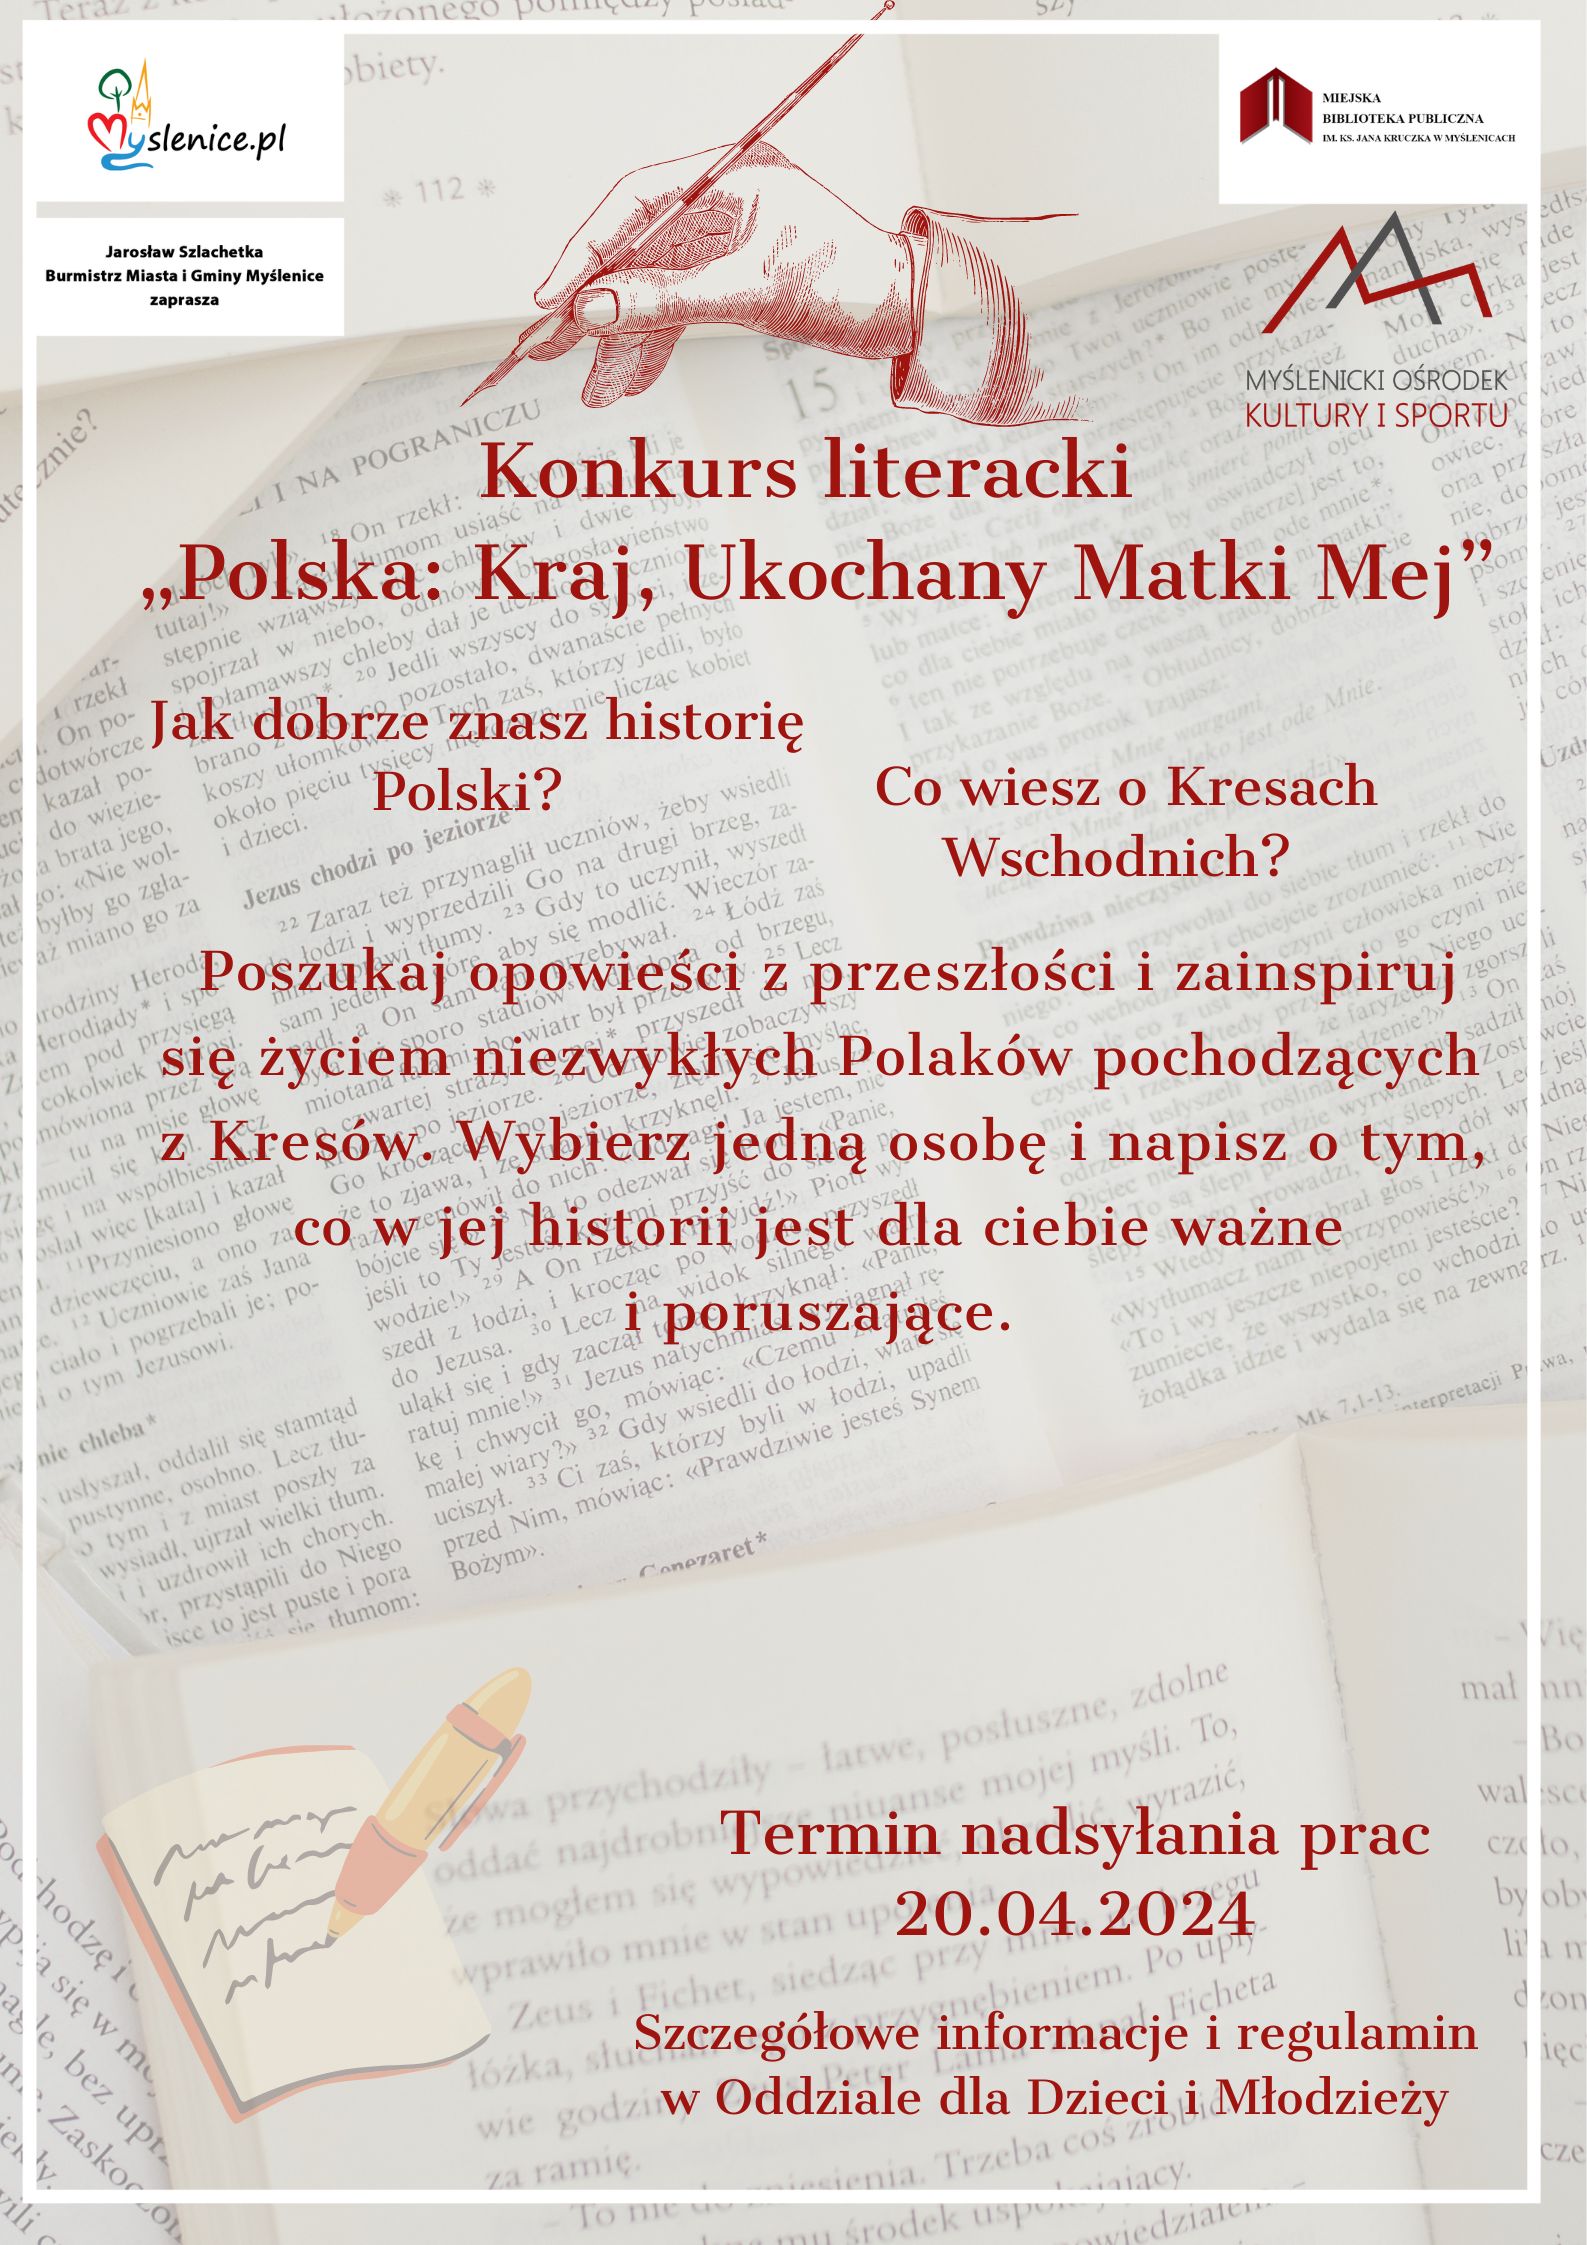 Ogłaszamy konkurs literacki “Polska: Kraj Ukochany Matki mej”